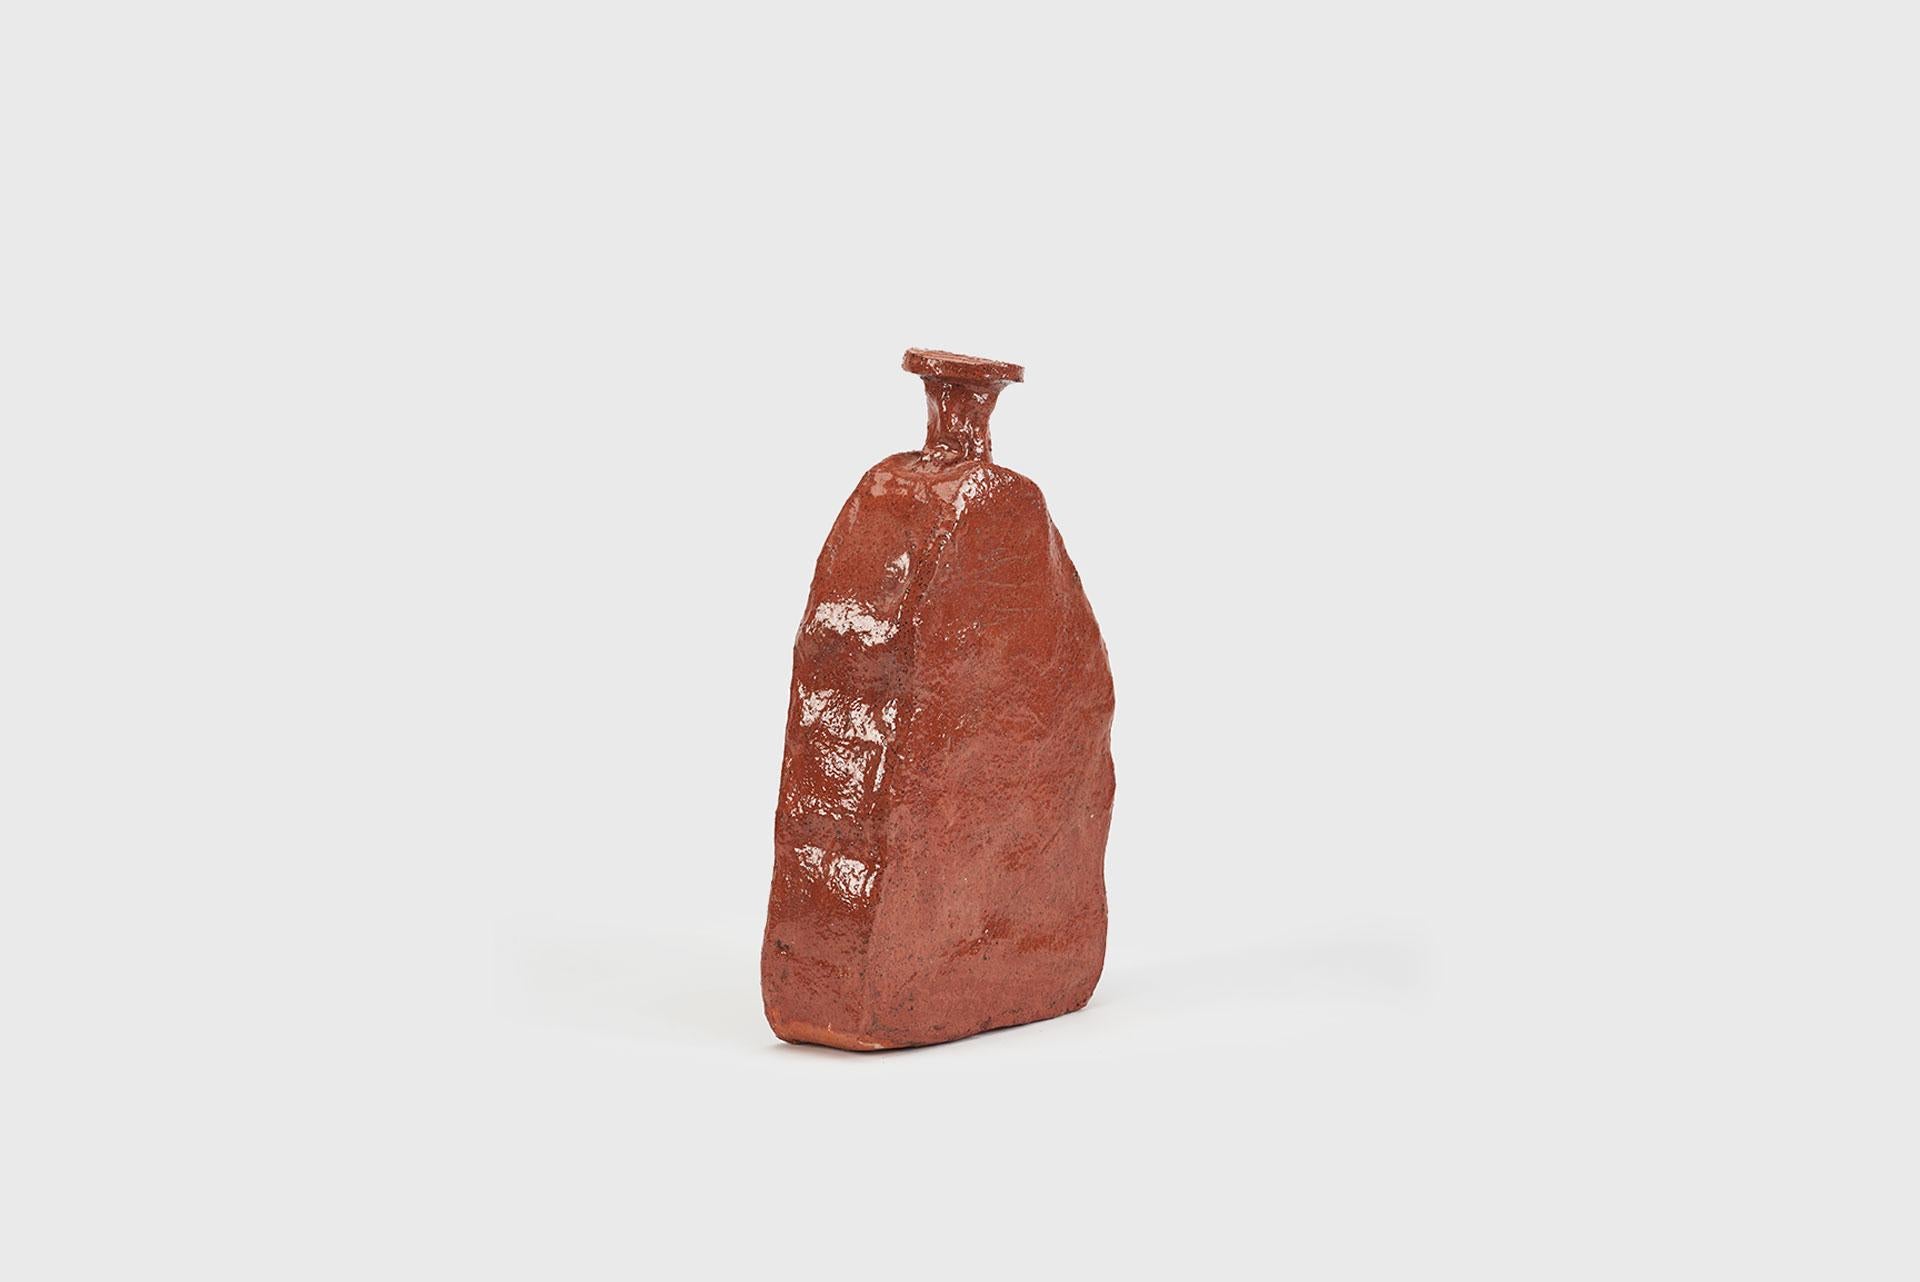 Ceramic vase model “Aloi”
From the series 